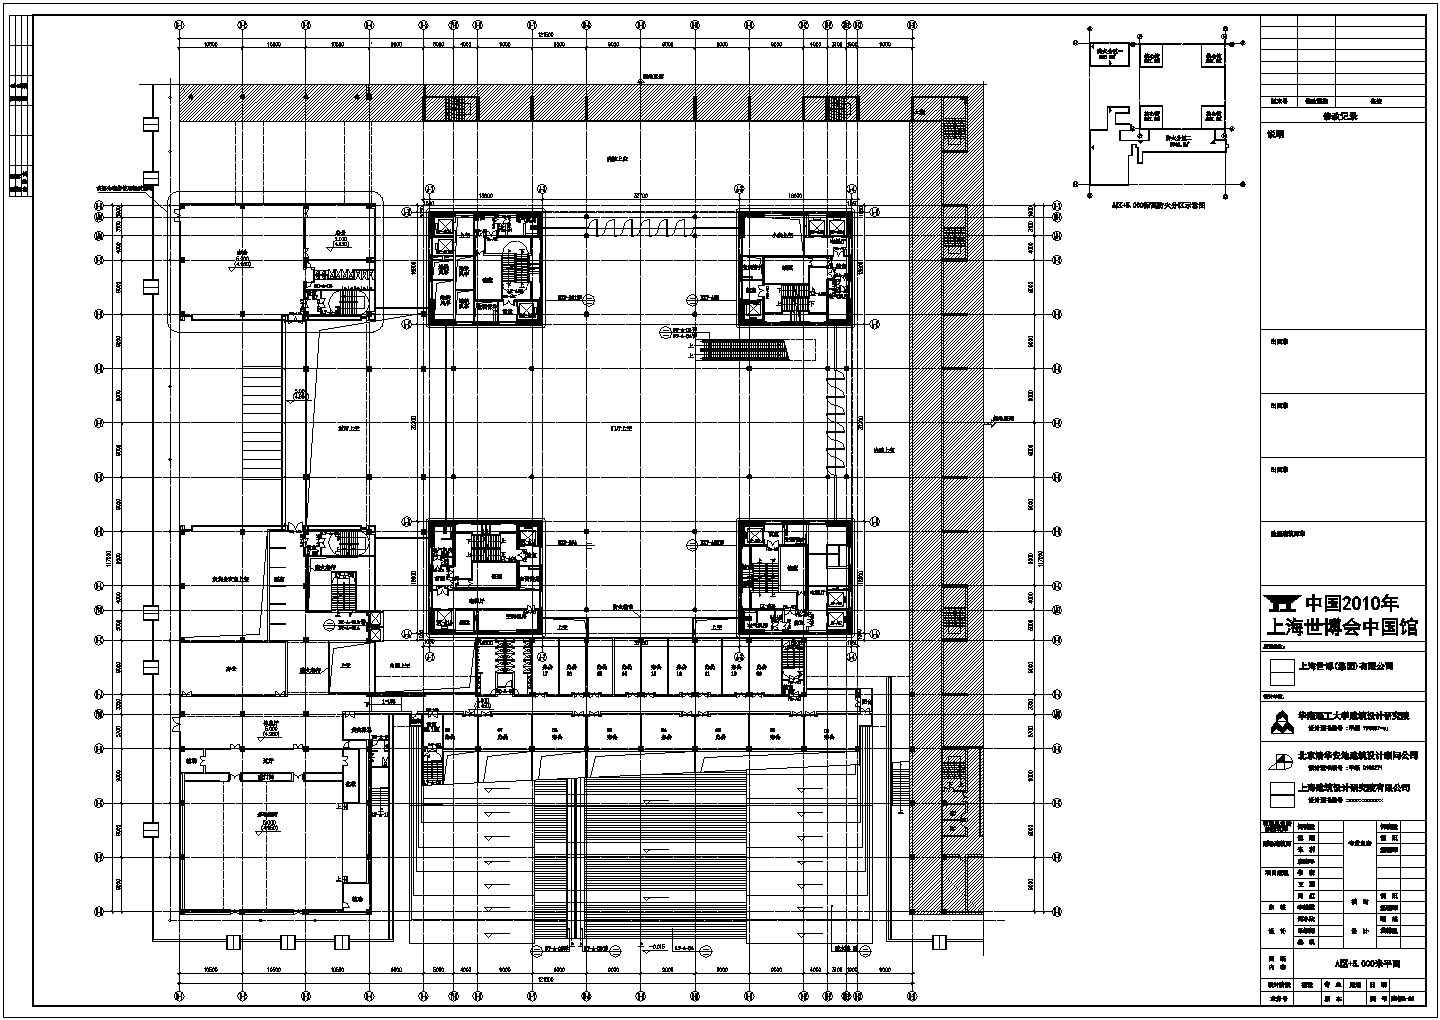 某展览展馆CAD建筑方案设计图-平面图(地面)